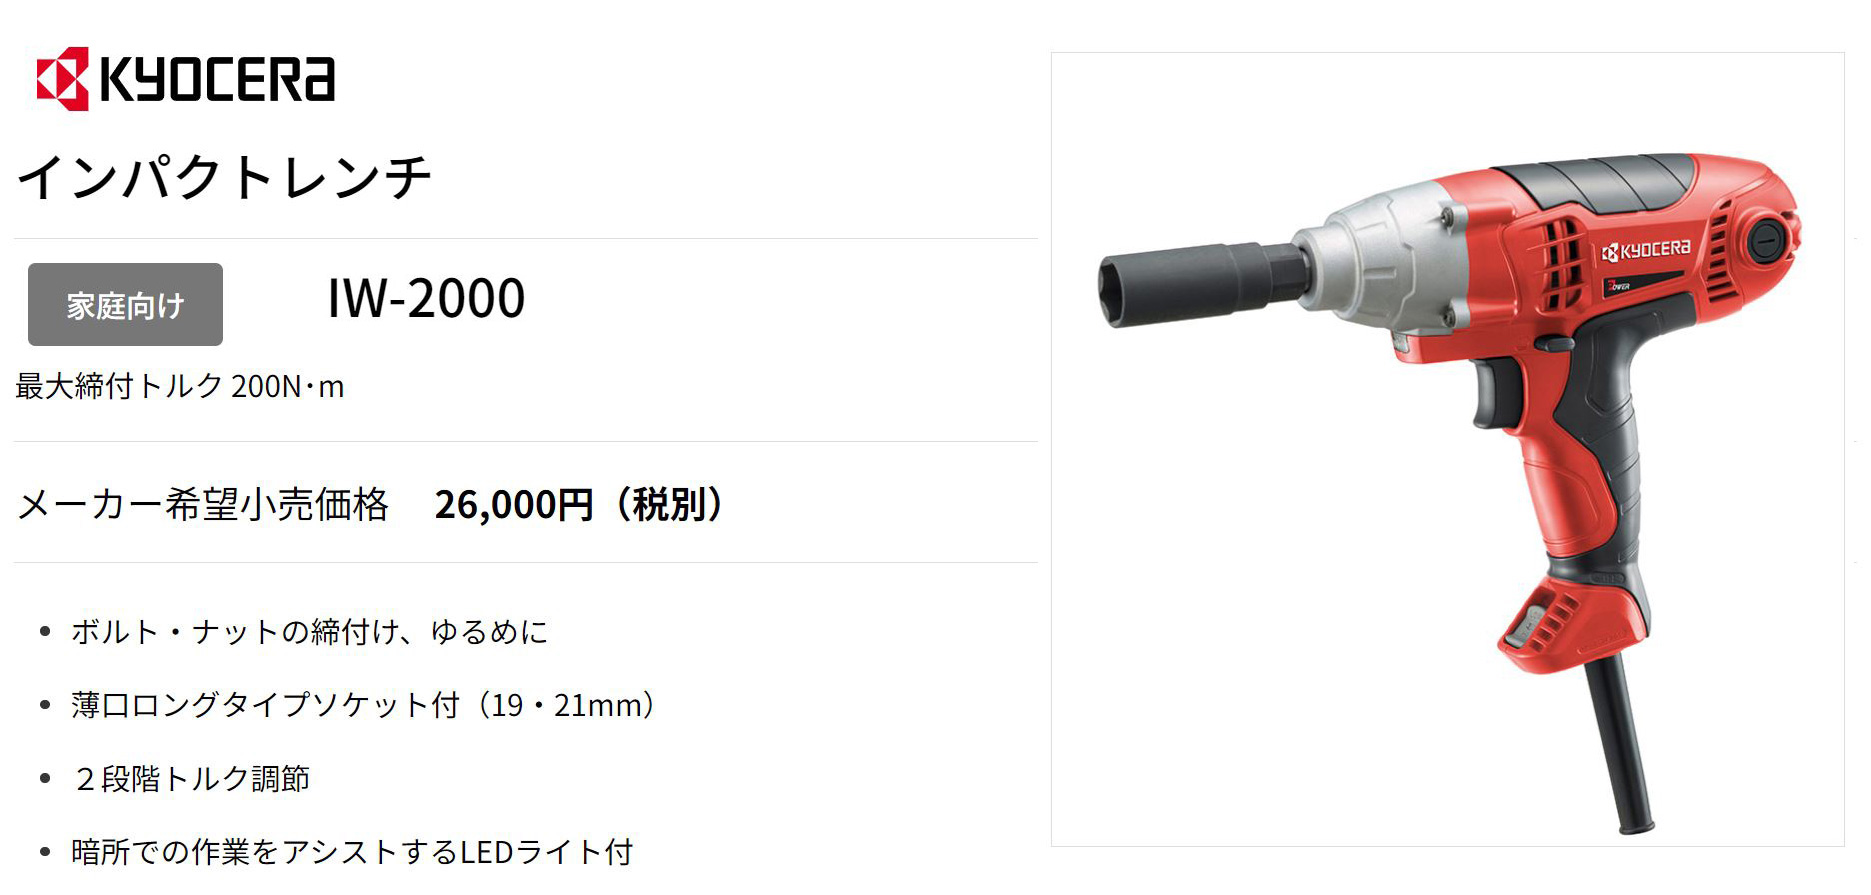 京セラ KYOCERA IW-2000 インパクトレンチ 電動ツール -